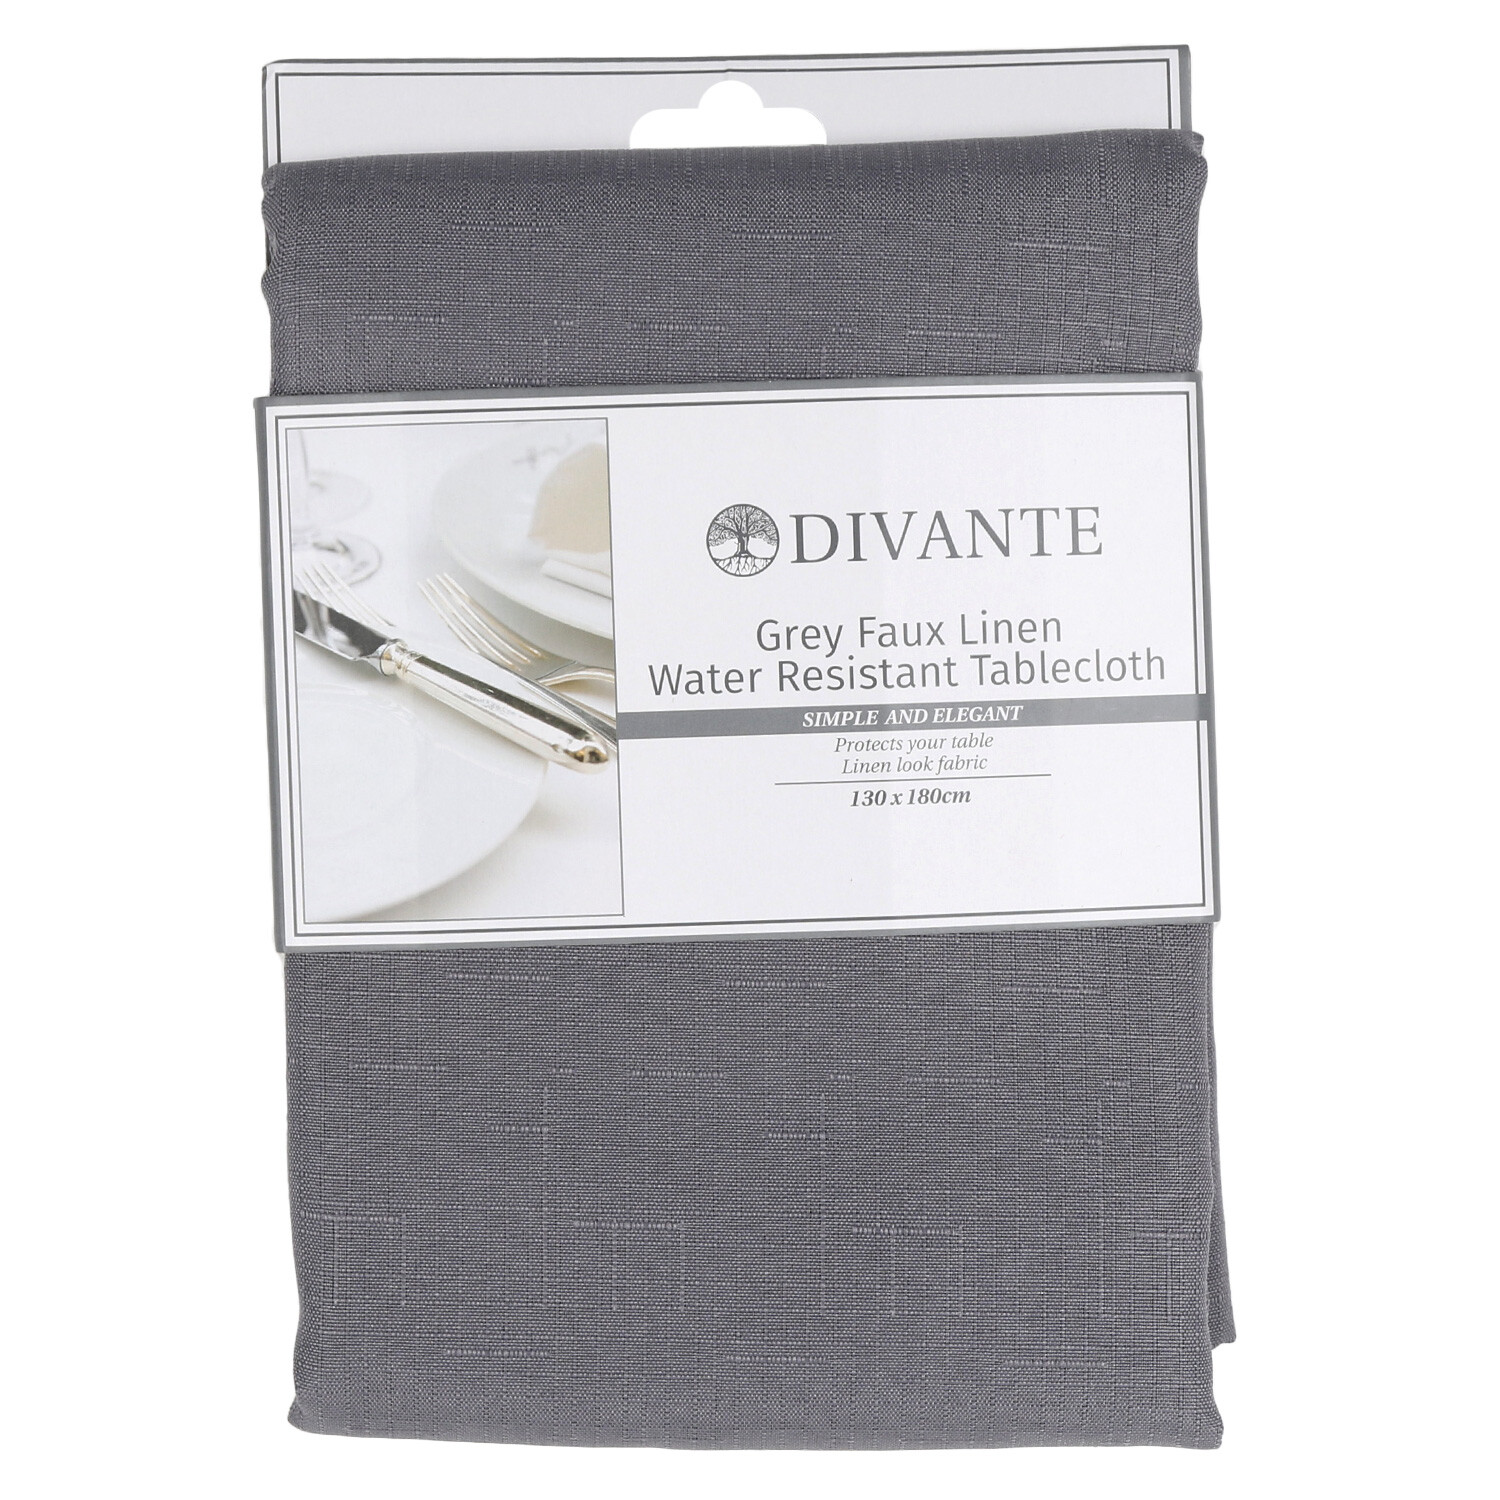 Divante Grey Faux Linen Water Resistant Tablecloth 180 x 130cm Image 1